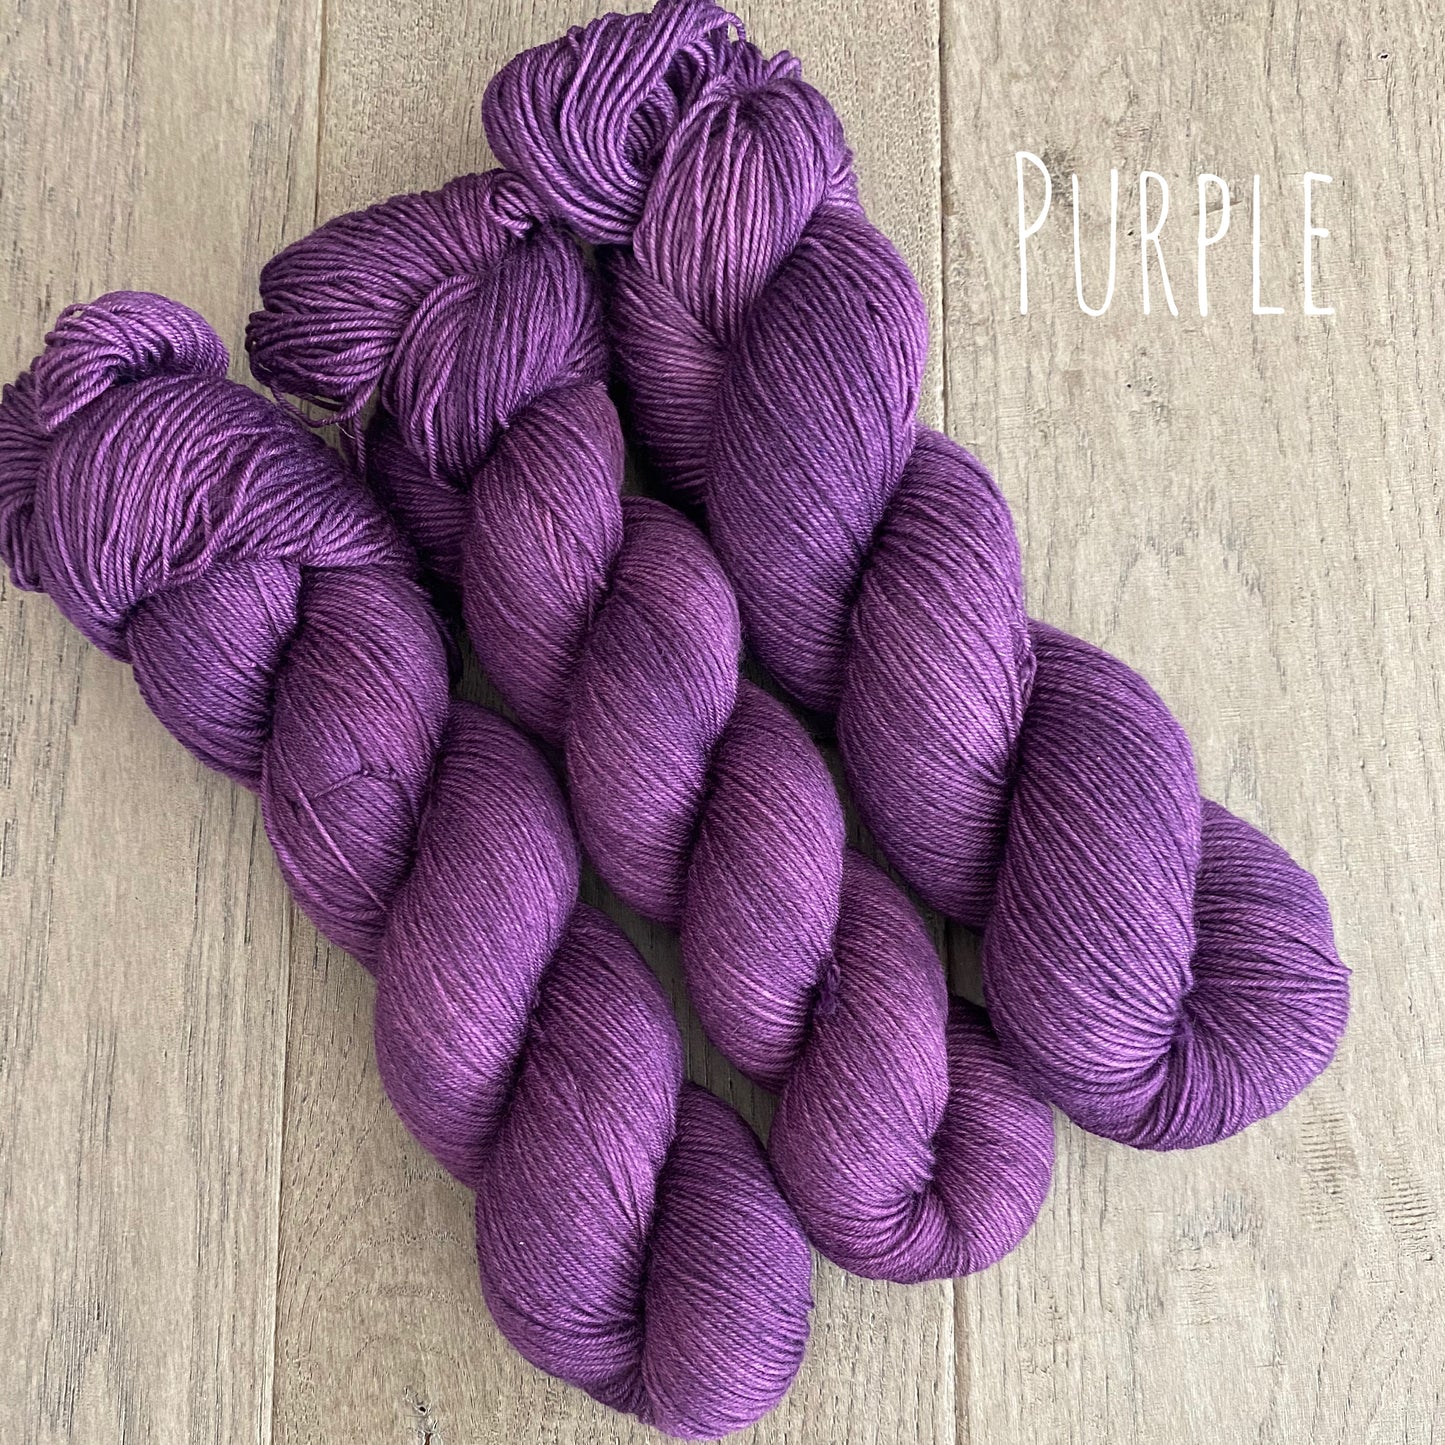 DK Purple Yarn